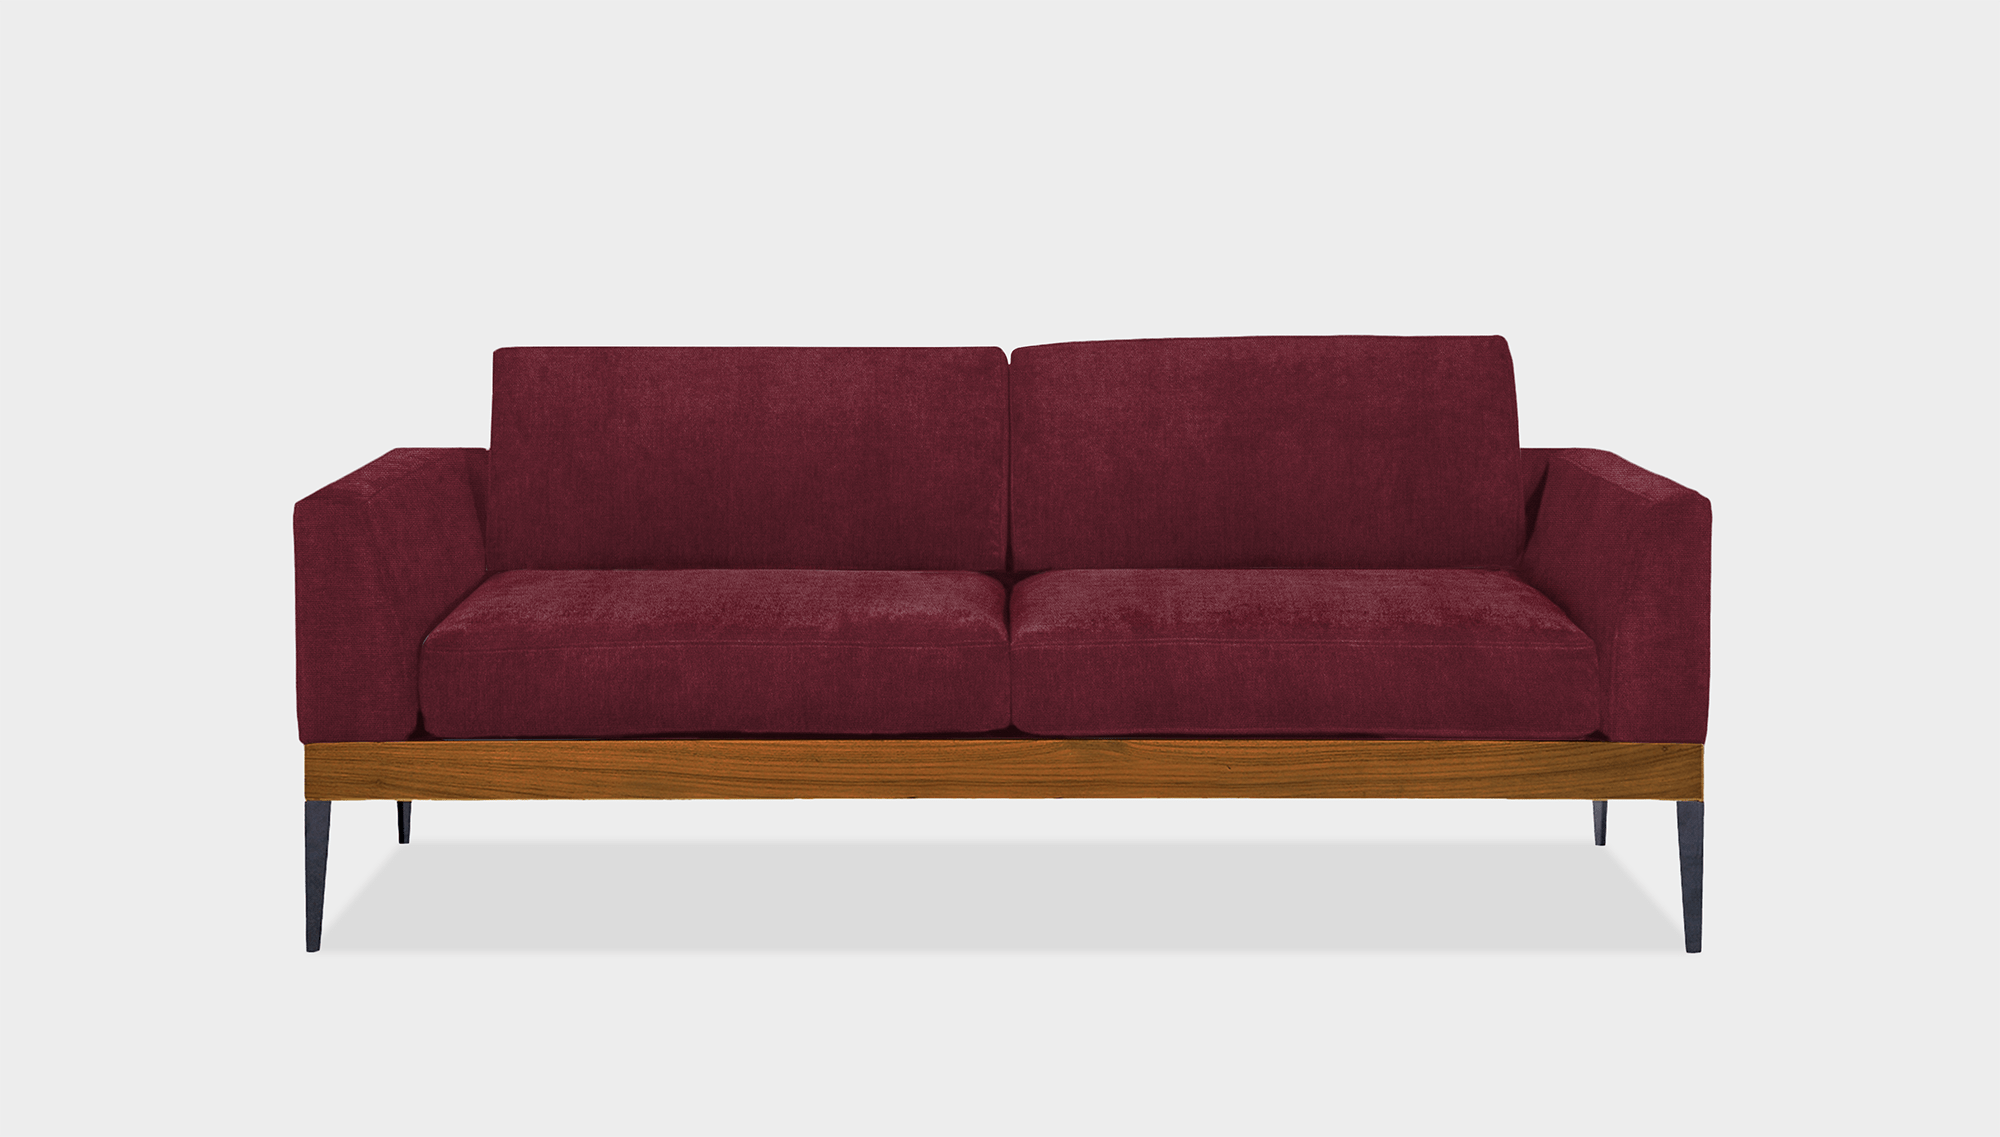 reddie-raw sofa 180W x 90D x 75H (42H seat) *cm / Fabric~Magma_Merlot / Wood Teak~Natural Andi Sofa